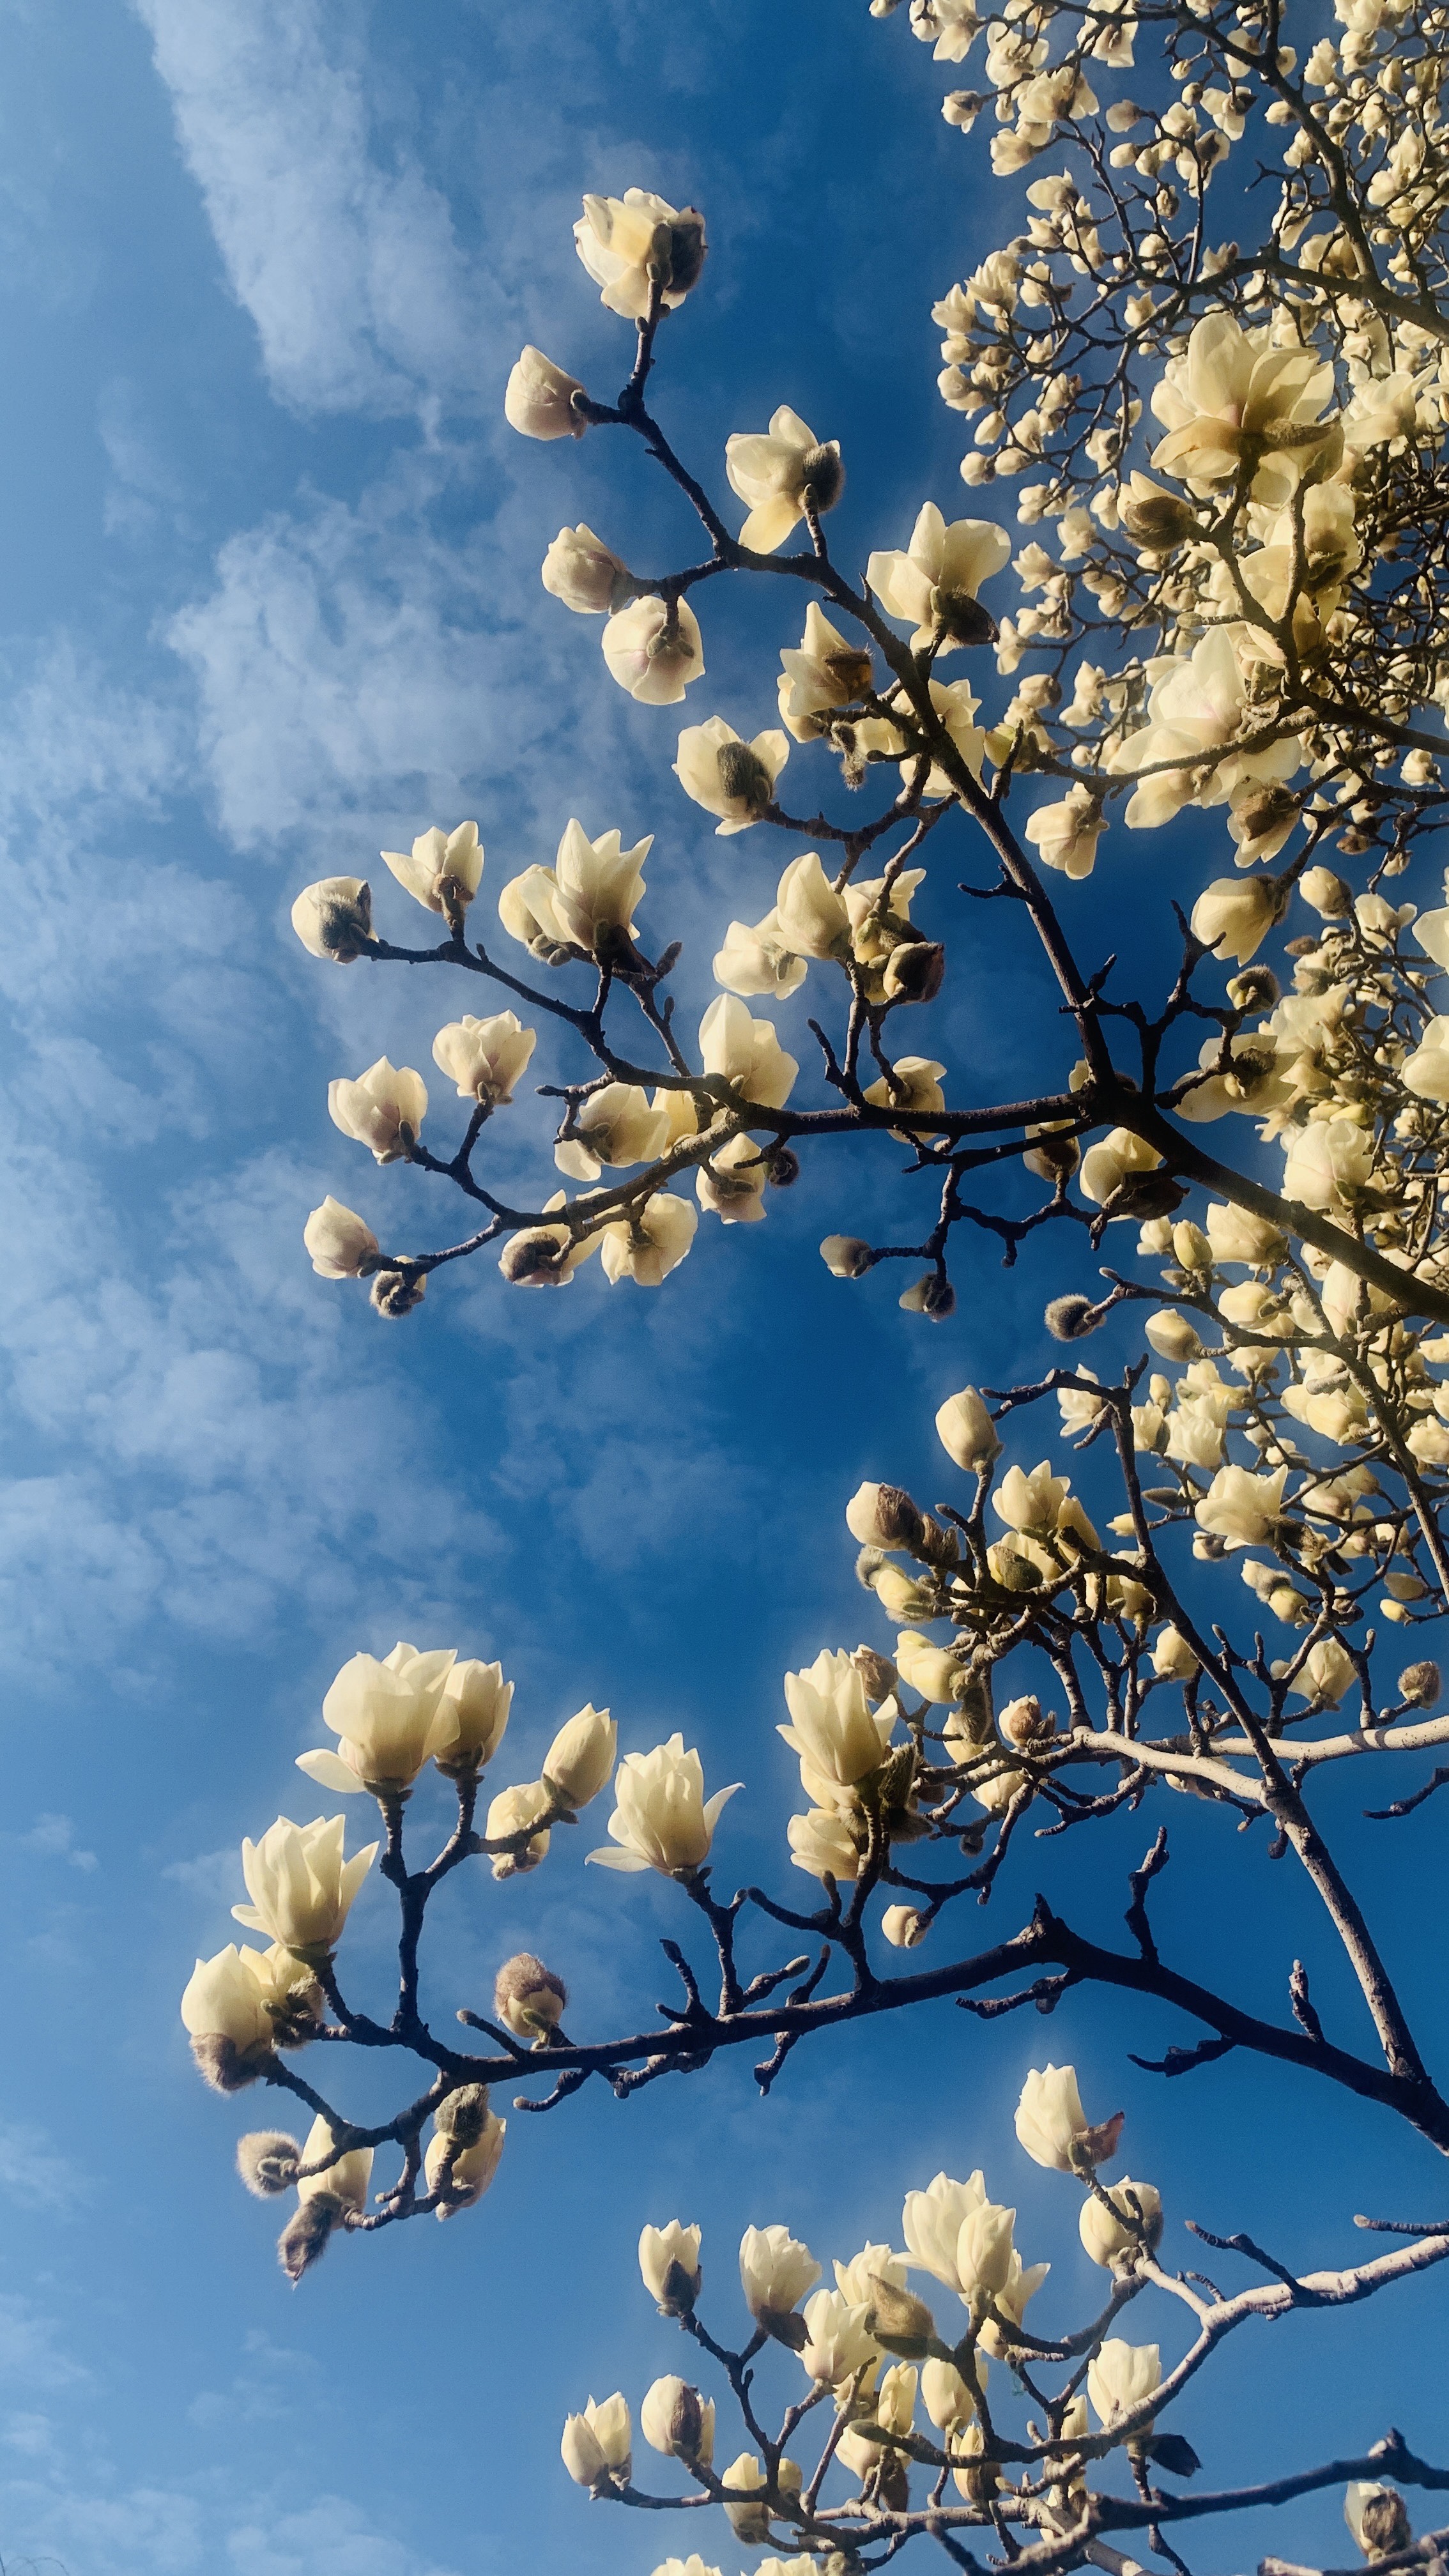 大明湖的白色玉兰花,在蓝天白云下,朵朵怒放的花,香味浓郁传四方!